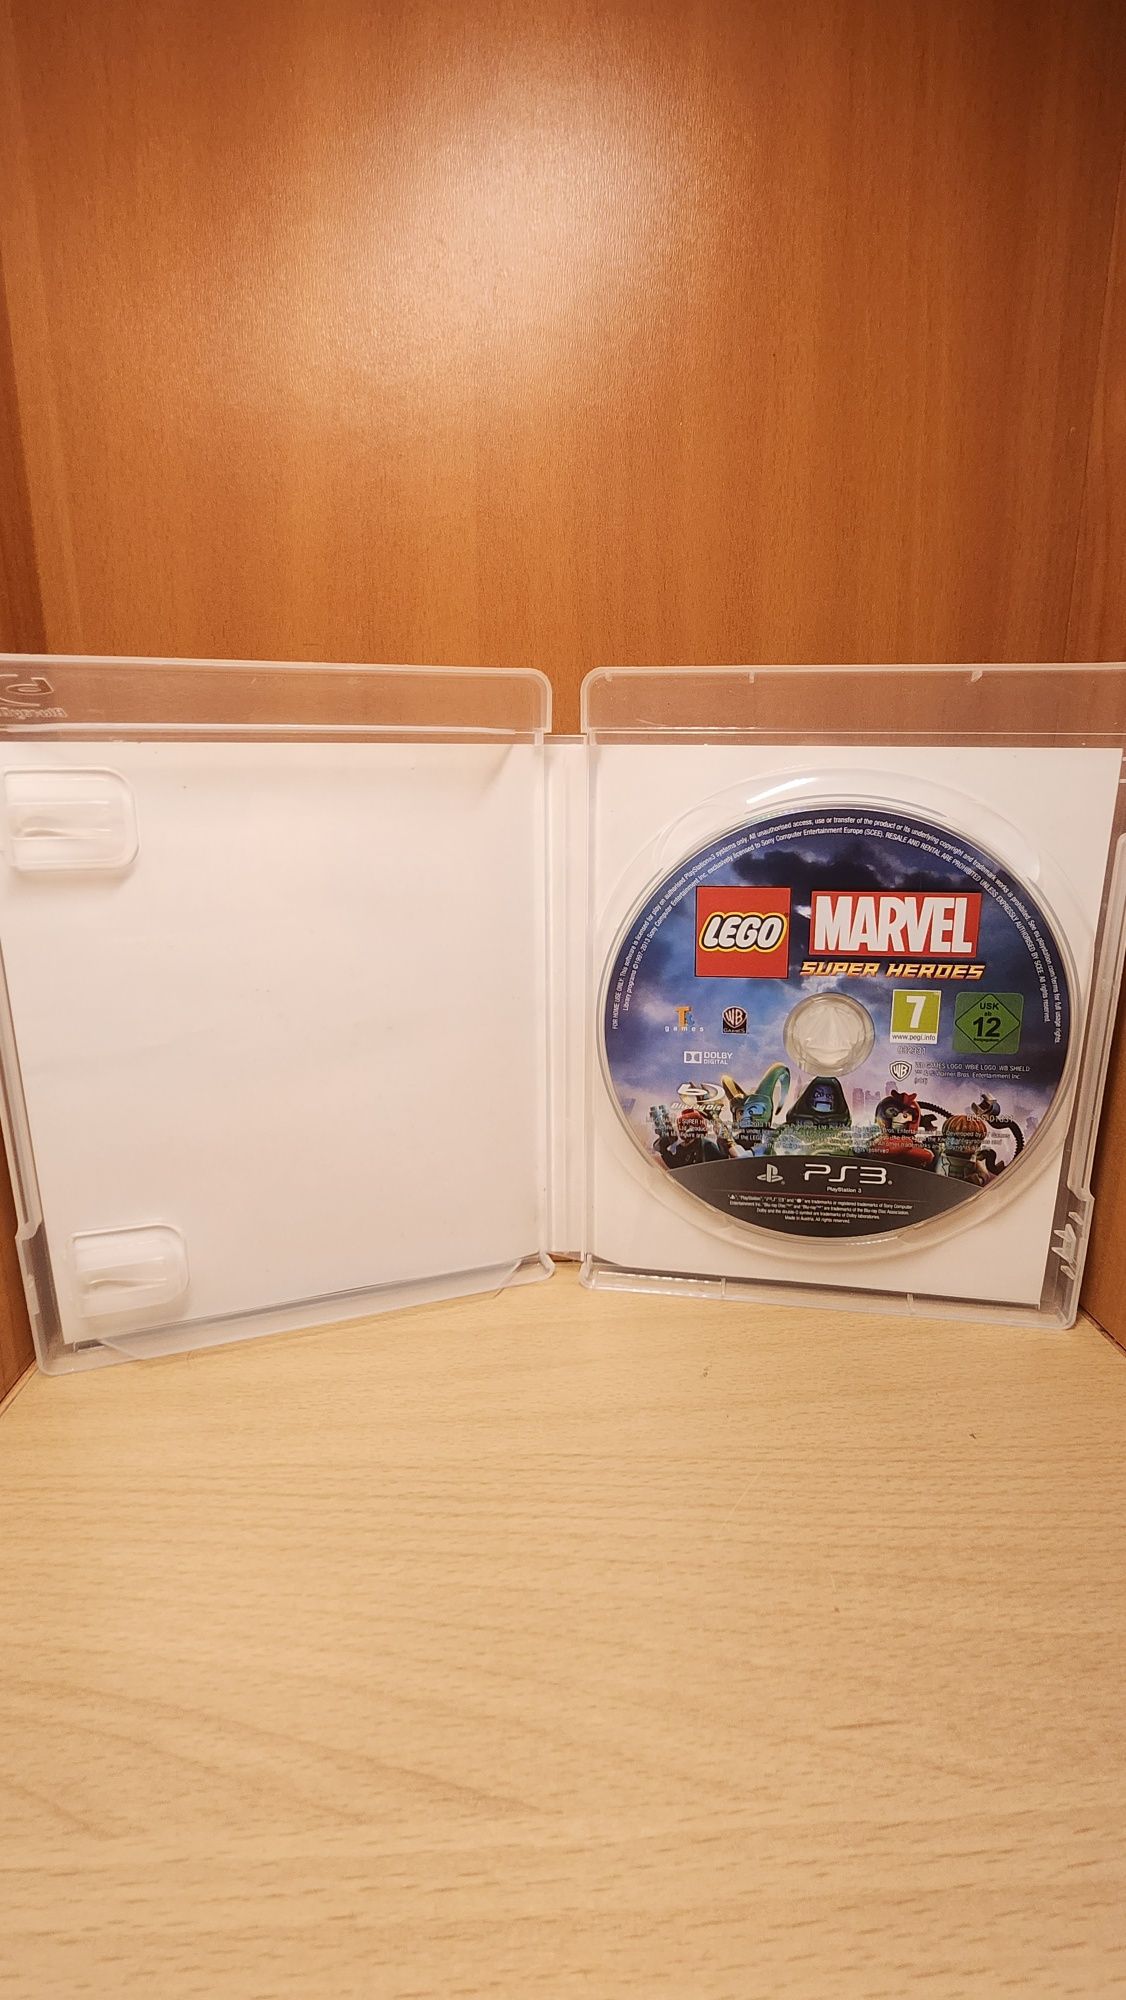 Lego Mavrel Super Heroes PS3